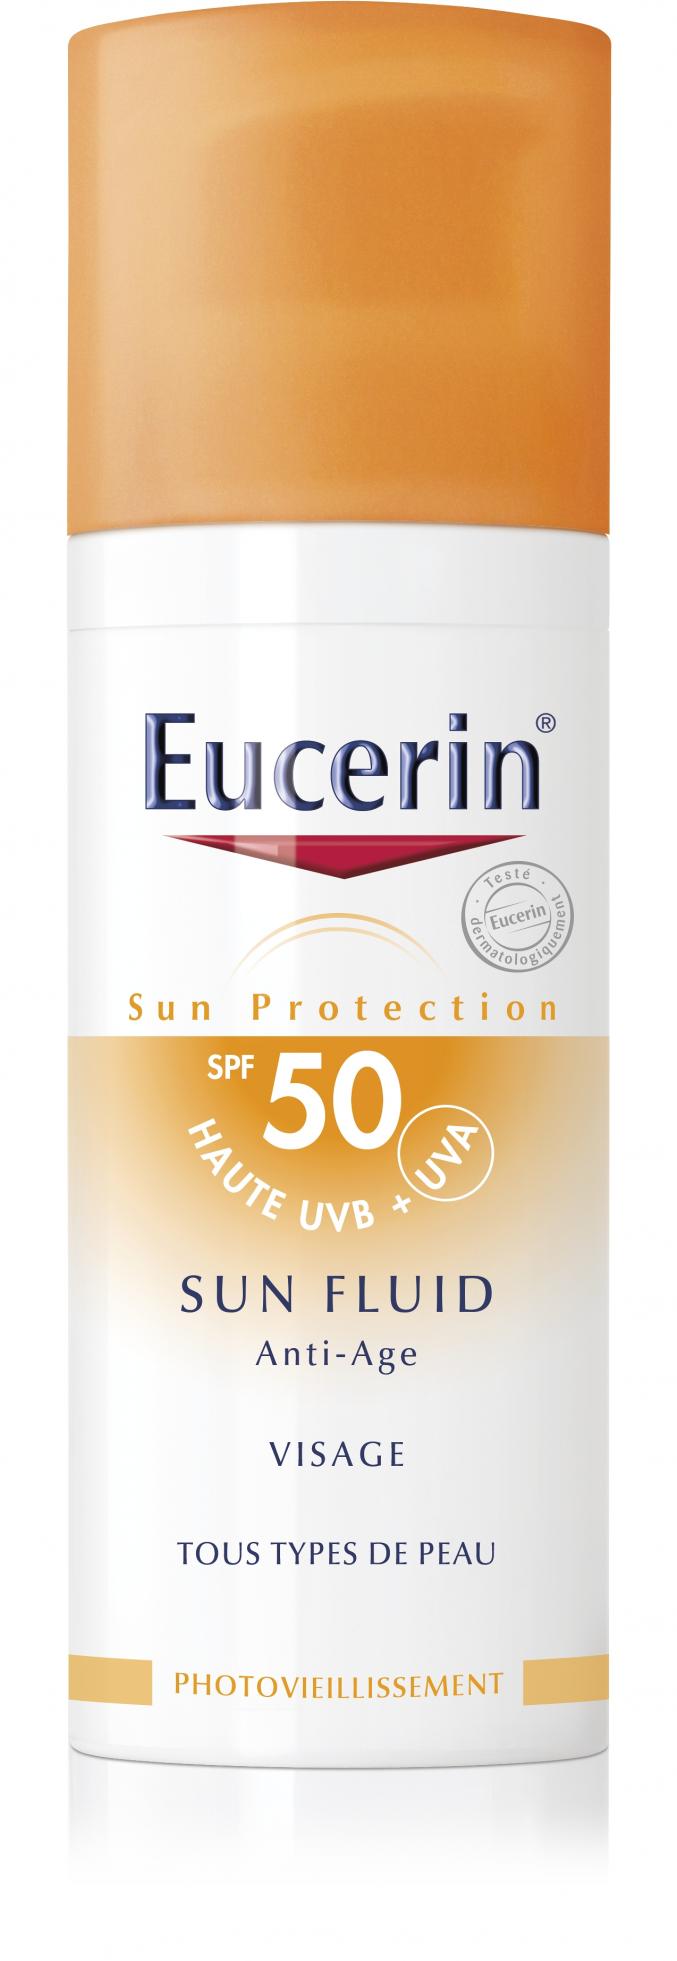 Sun Fluid anti-âge SPF 30/50 (Eucerin)